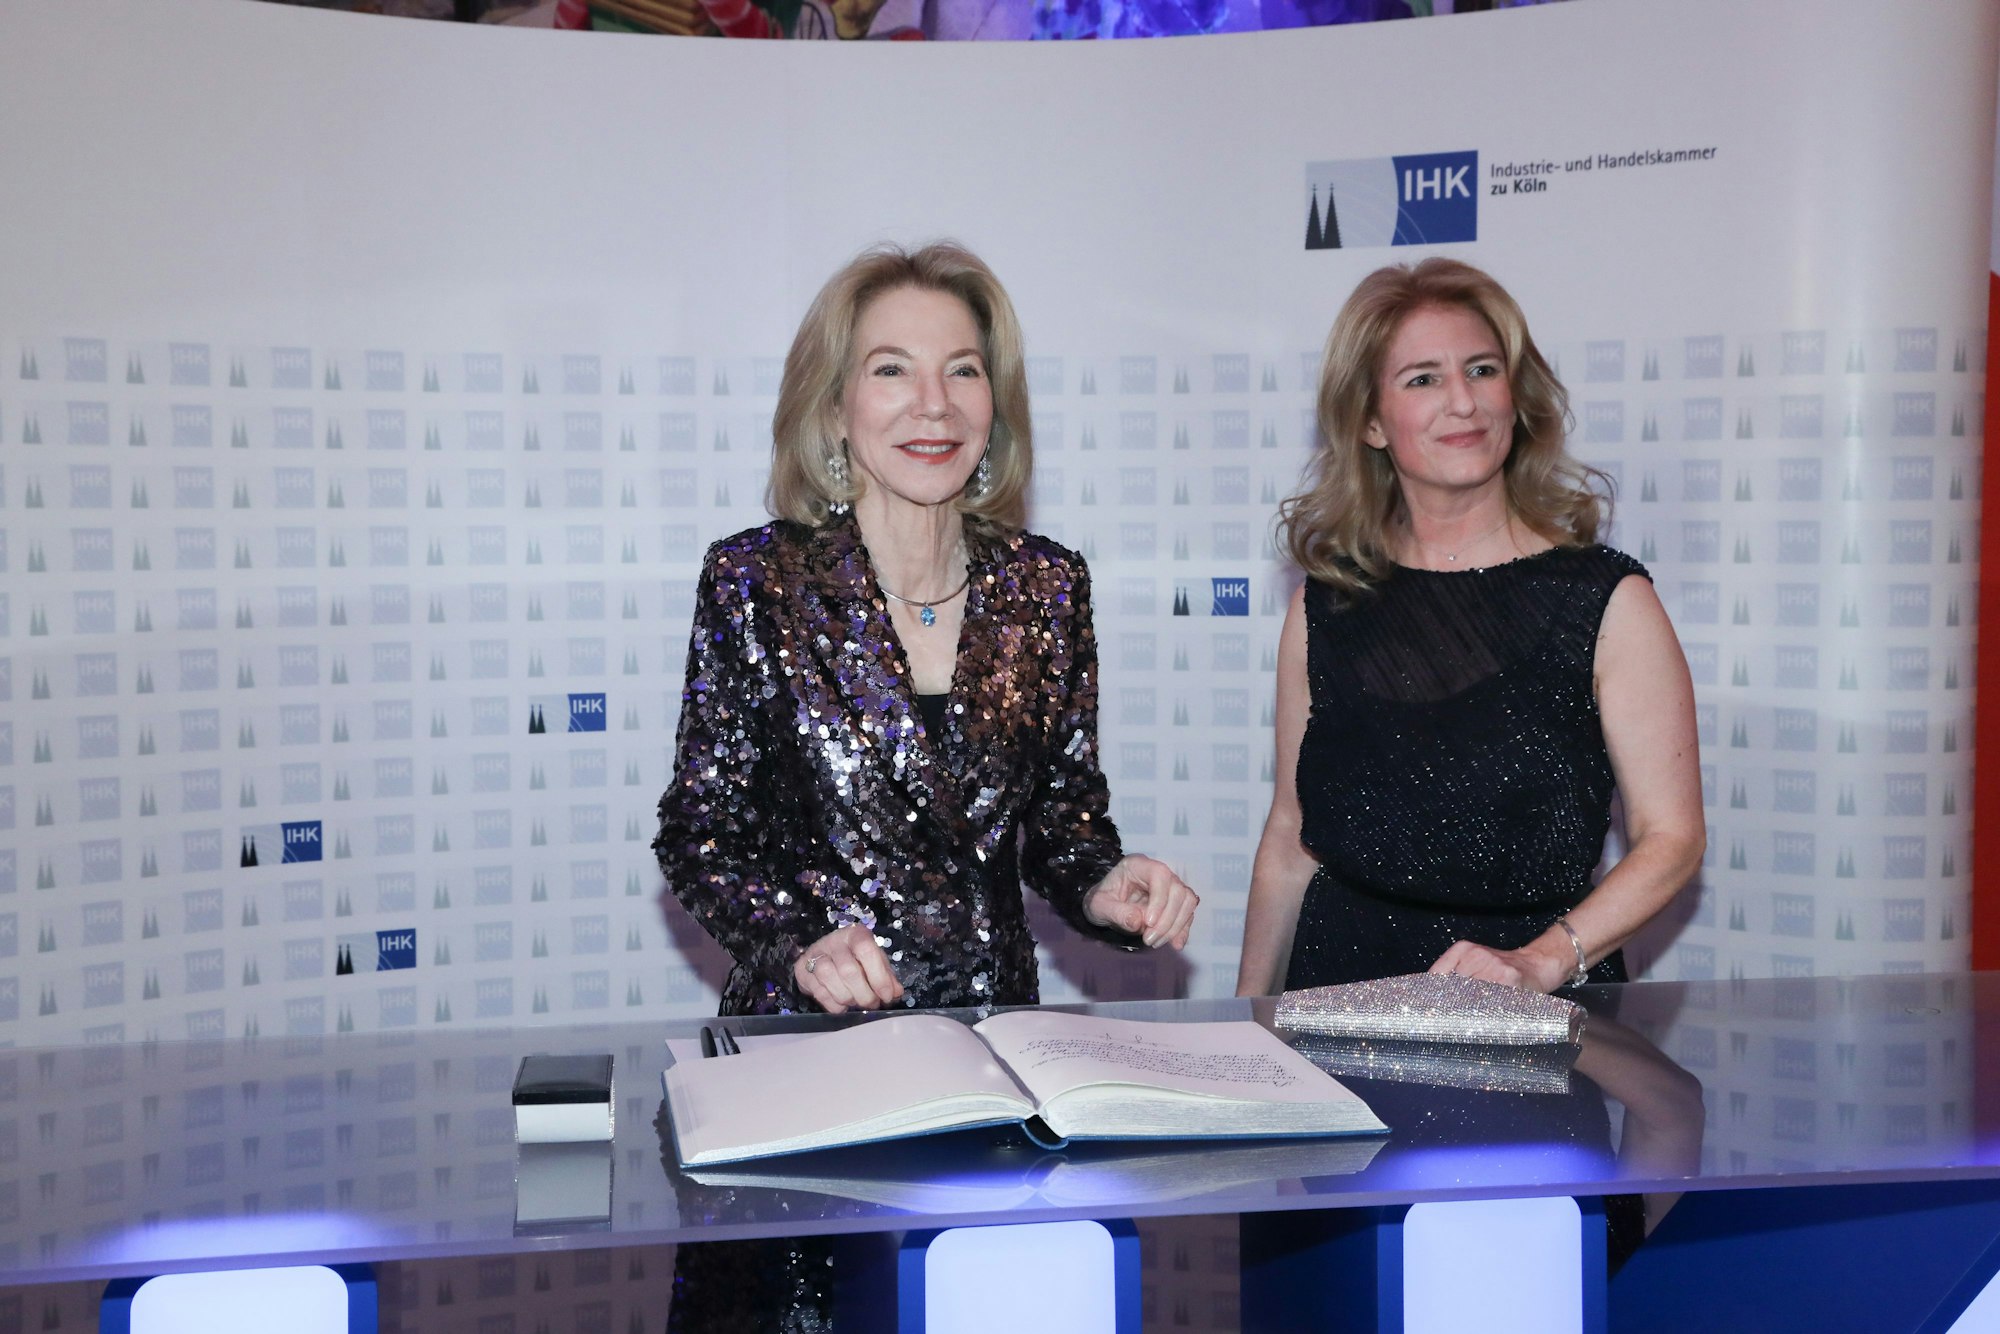 Nicole Grünewald, IHK-Präsidentin (r.), gemeinsam mit US-Botschafterin Amy Gutmann beim IHK-Neujahrsempfang in Köln am 12. Januar 2023.